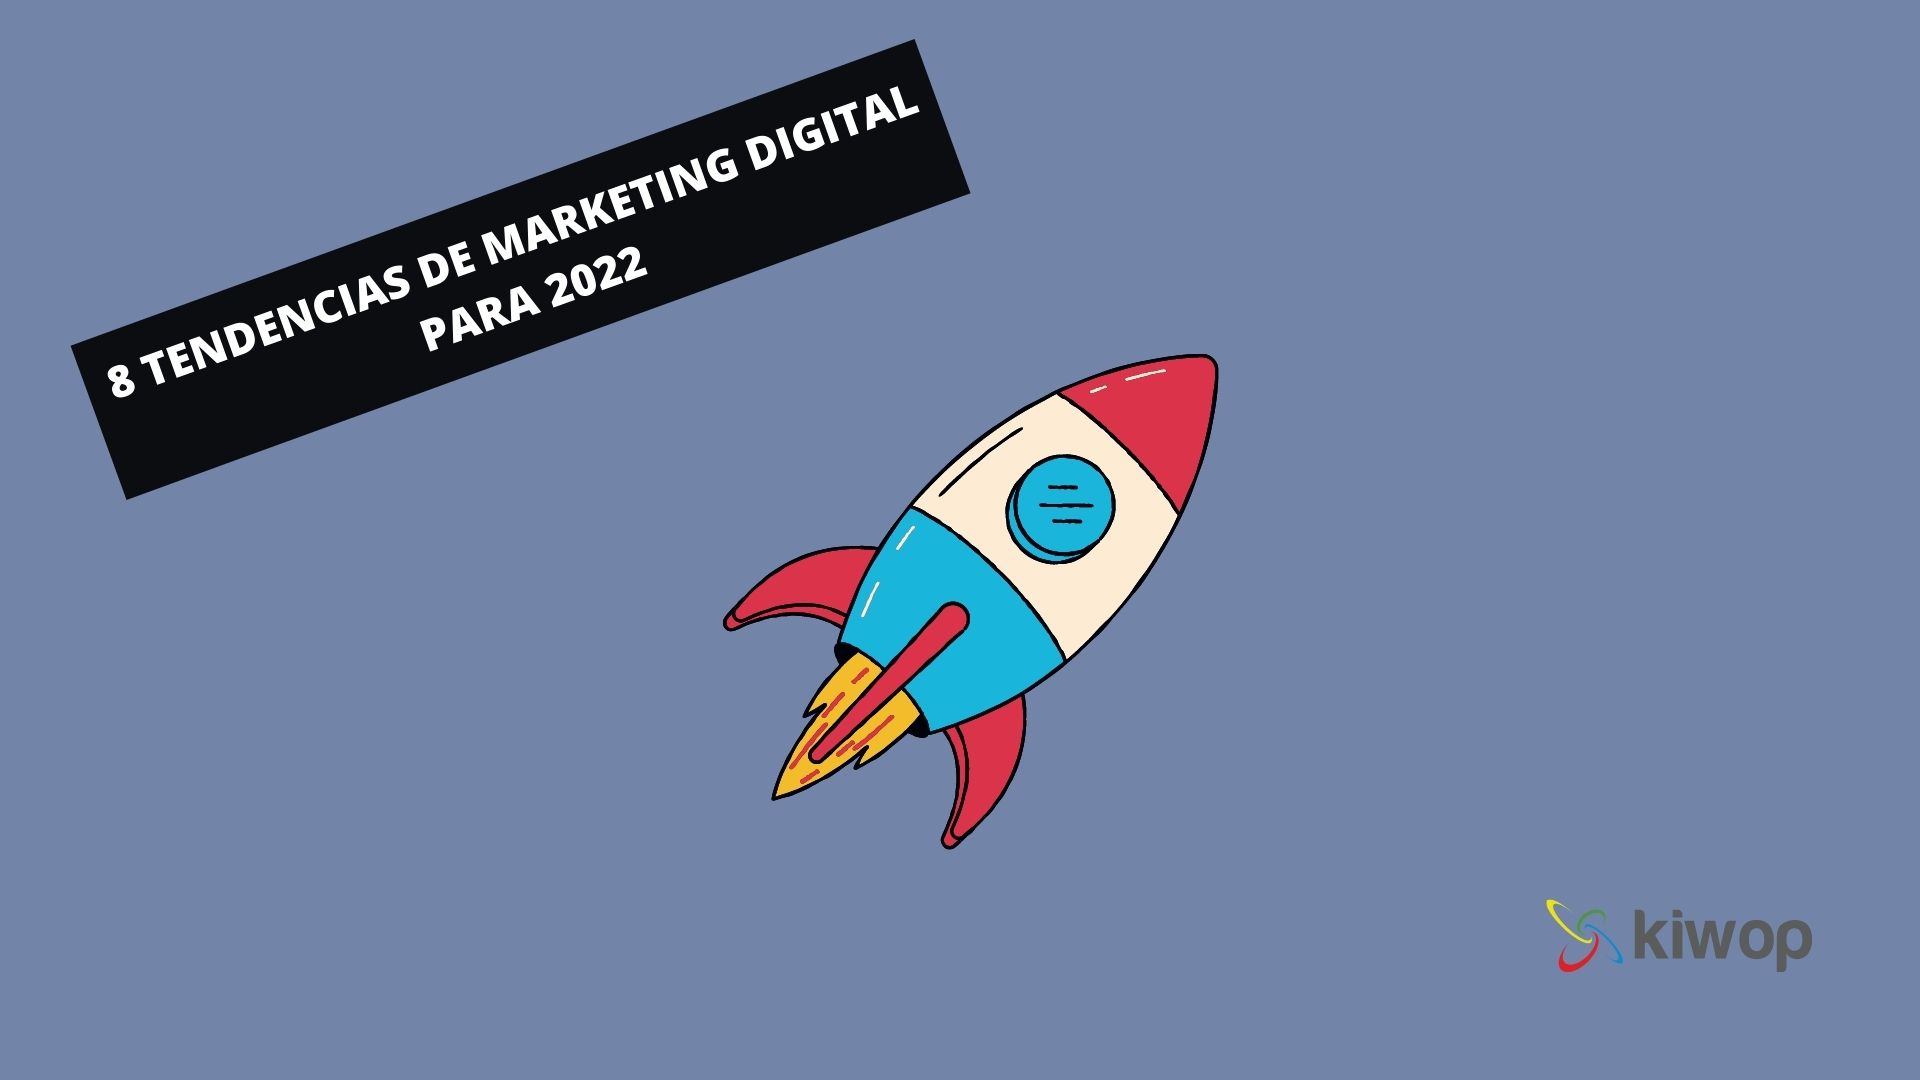 8 tendencias de marketing digital parra 2022